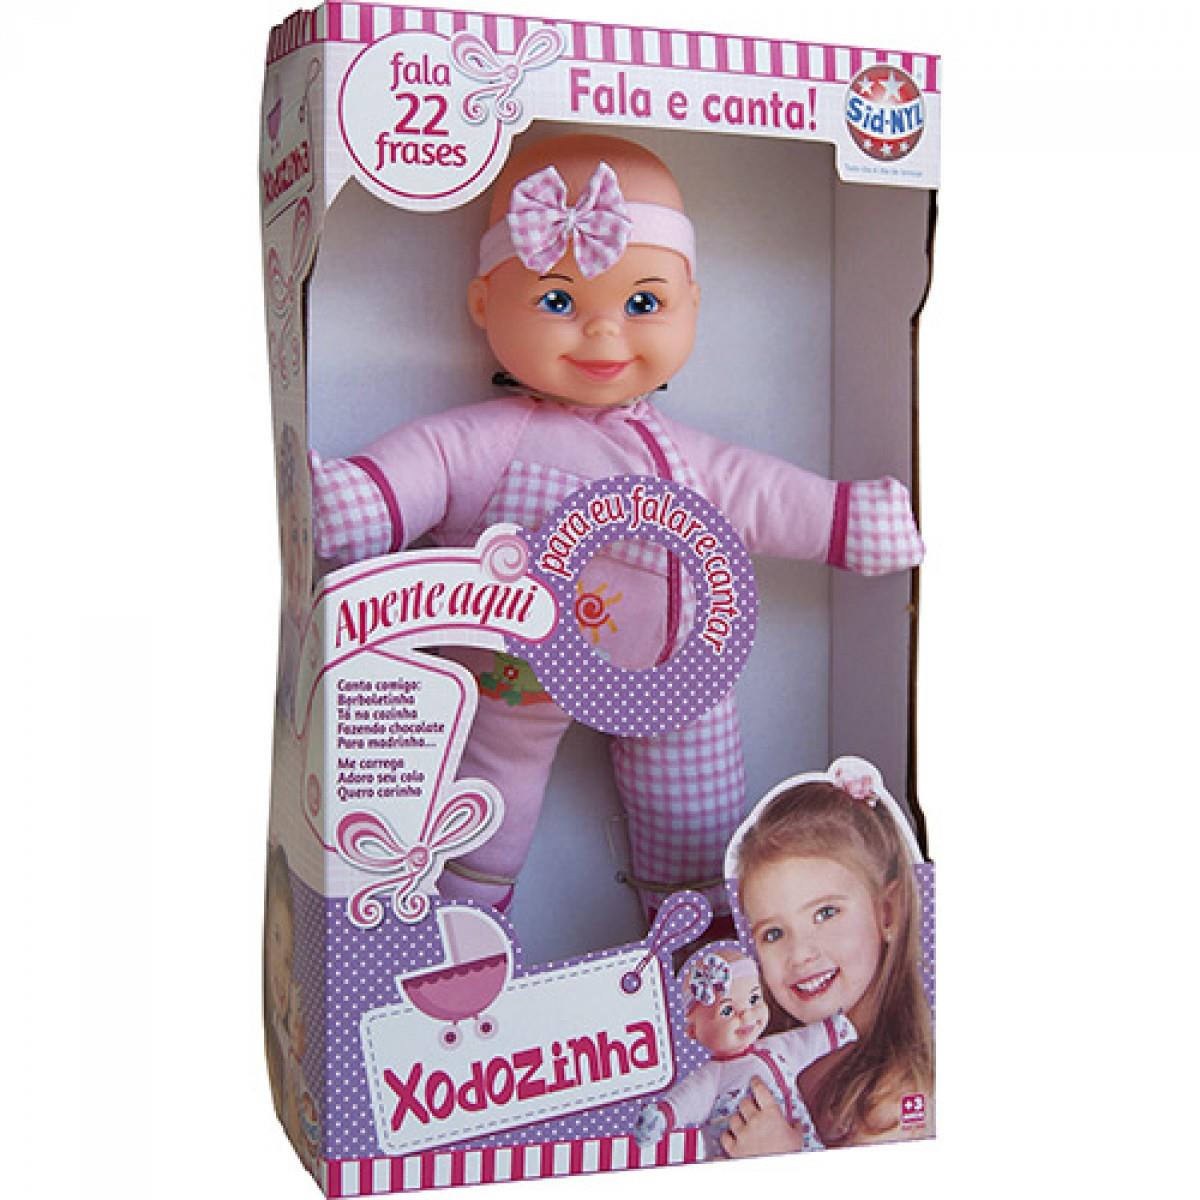 0 a 3 anos - Meninas Xodozinha Sid Nyl Agora brincar de boneca vai ficar muito mais real com a Boneca Xodozinha da Sid-Nyl.